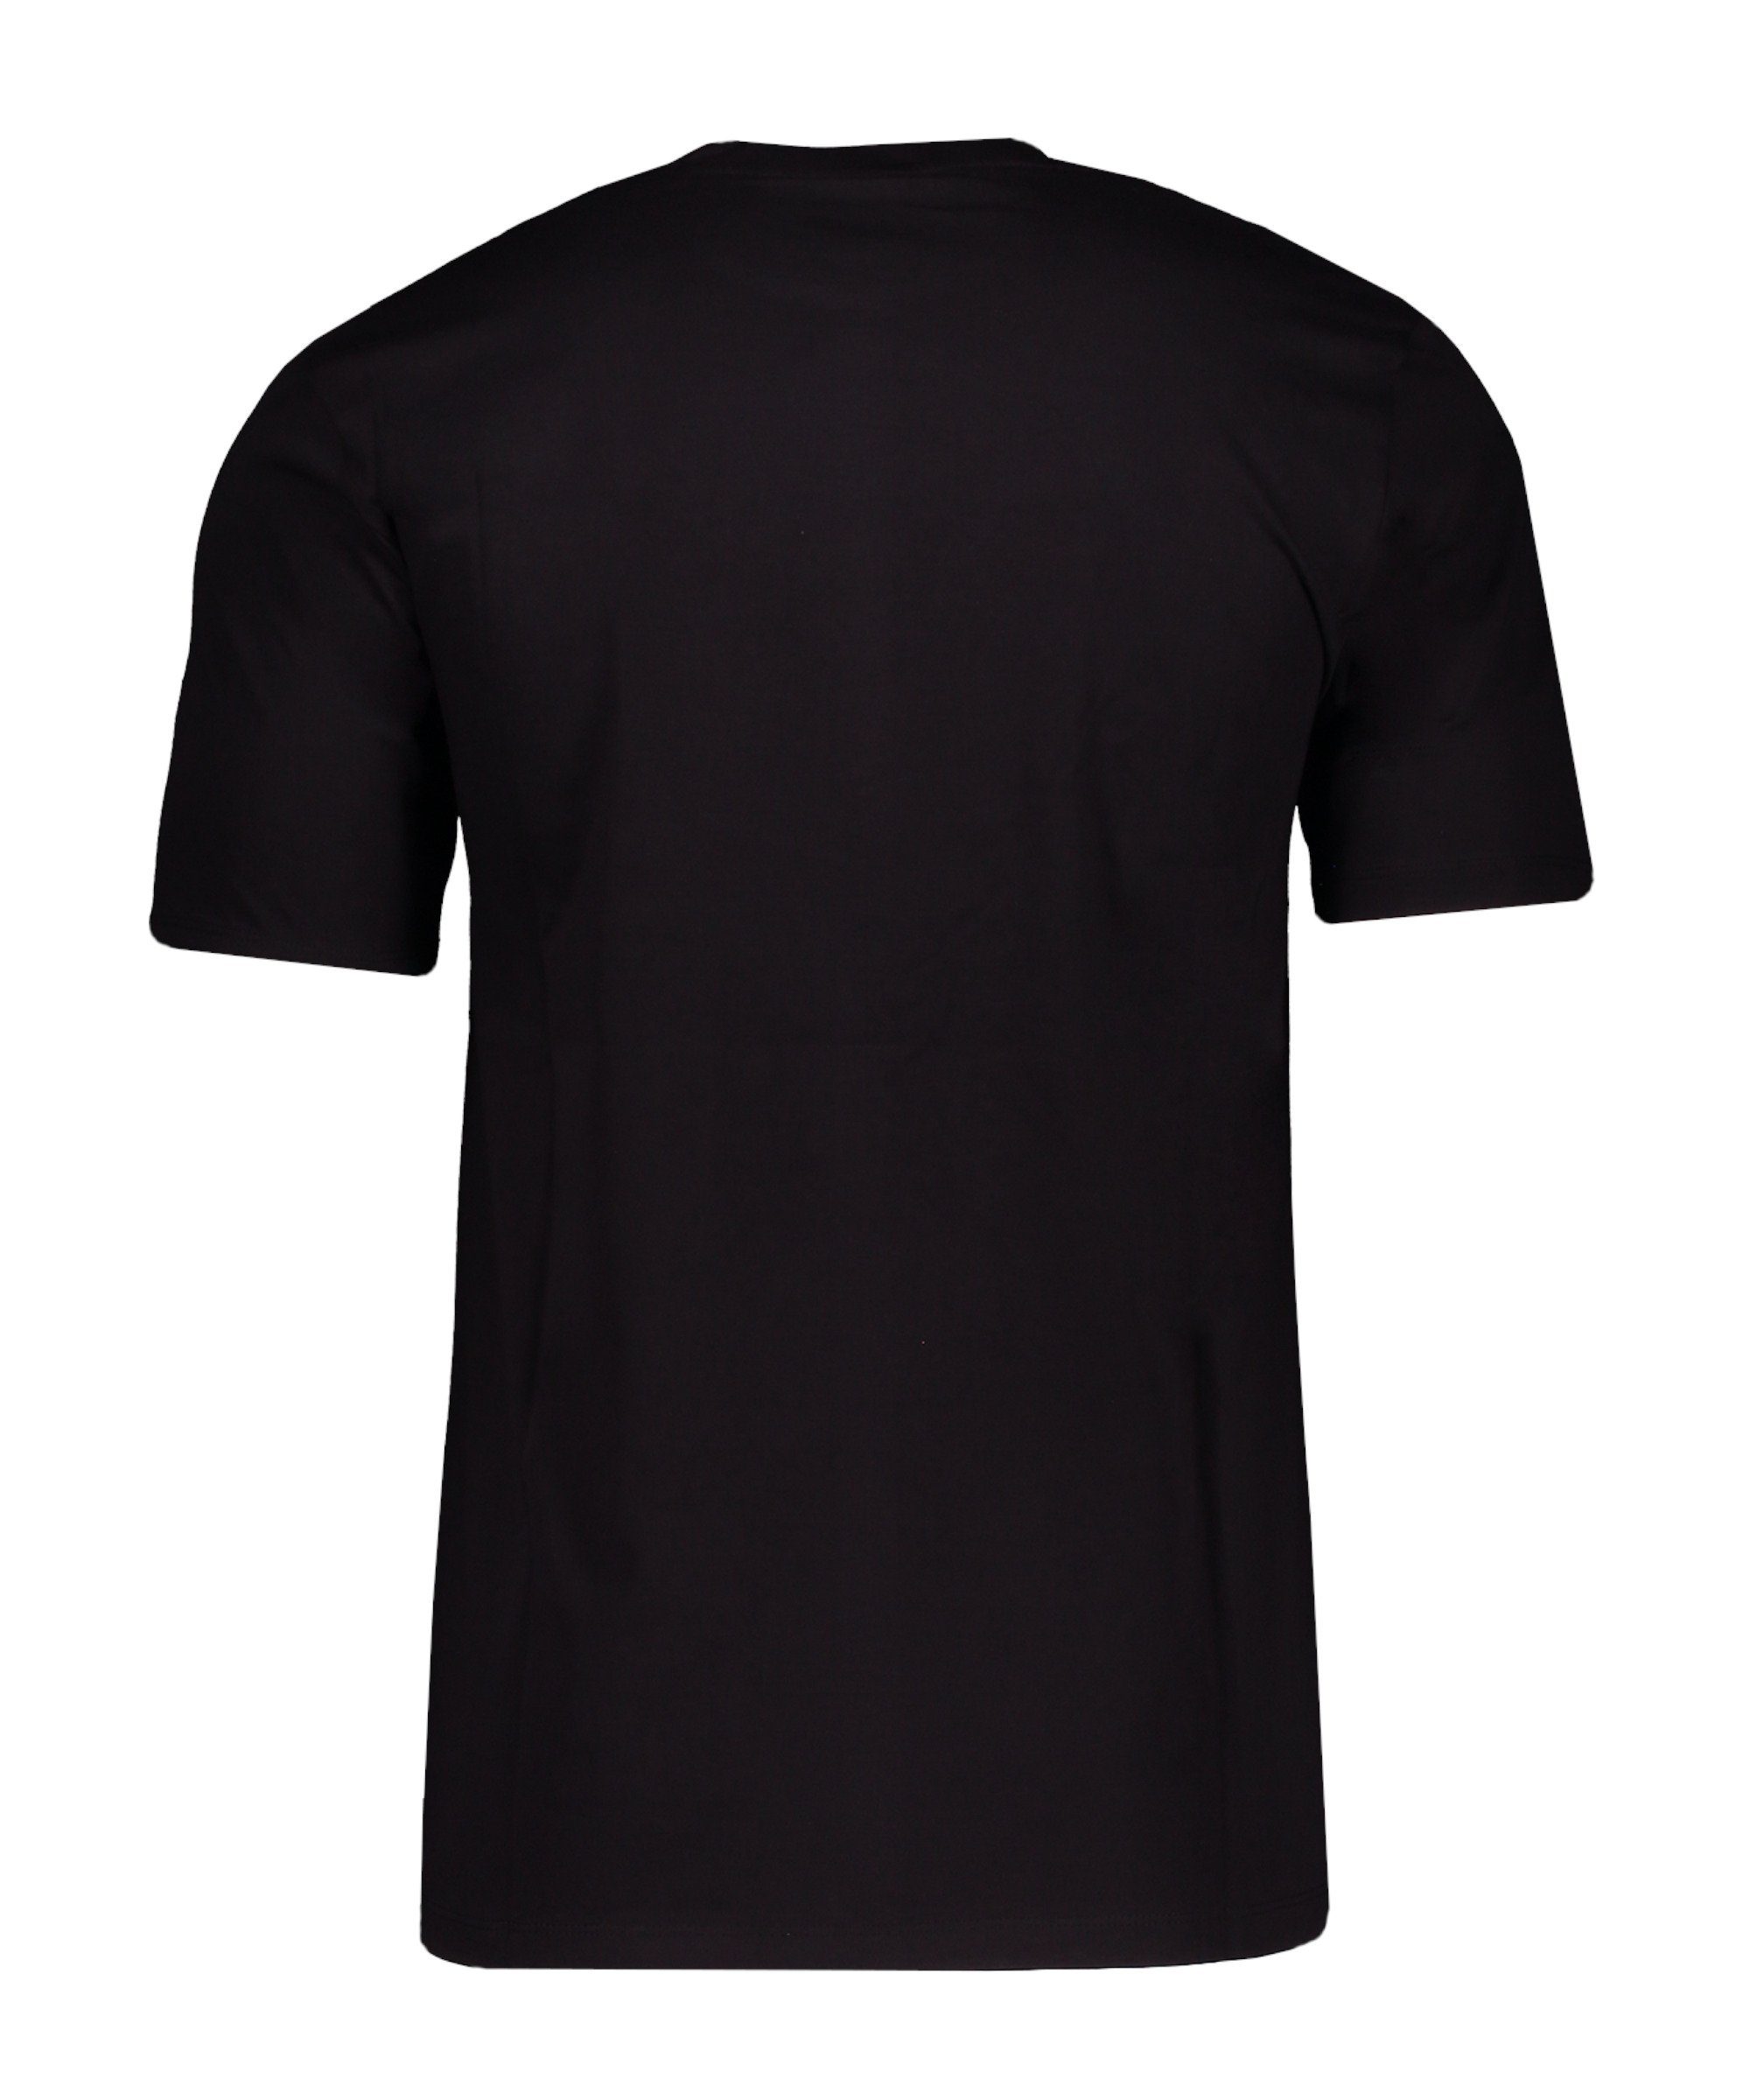 Umbro T-Shirt Core Logo T-Shirt schwarz default